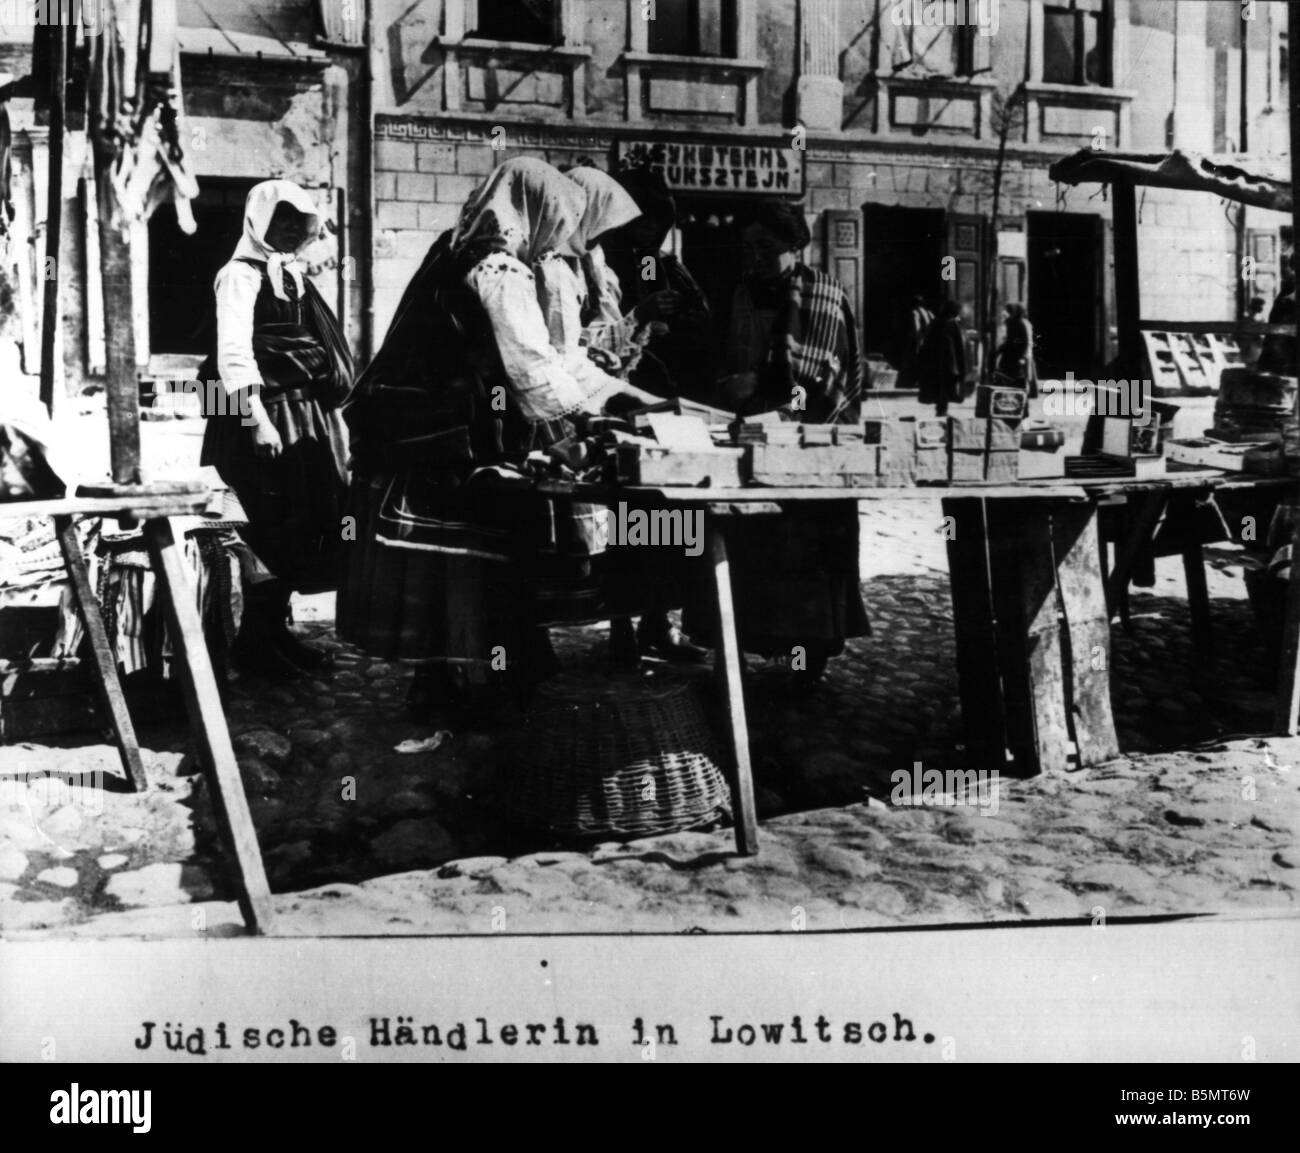 9IS 1915 0 0 A1 27 jüdische Verkäuferin in Lowitsch 1915 Geschichte des Judentums östlichen Juden jüdische Verkäuferin in Lowitsch Lowicz West Stockfoto